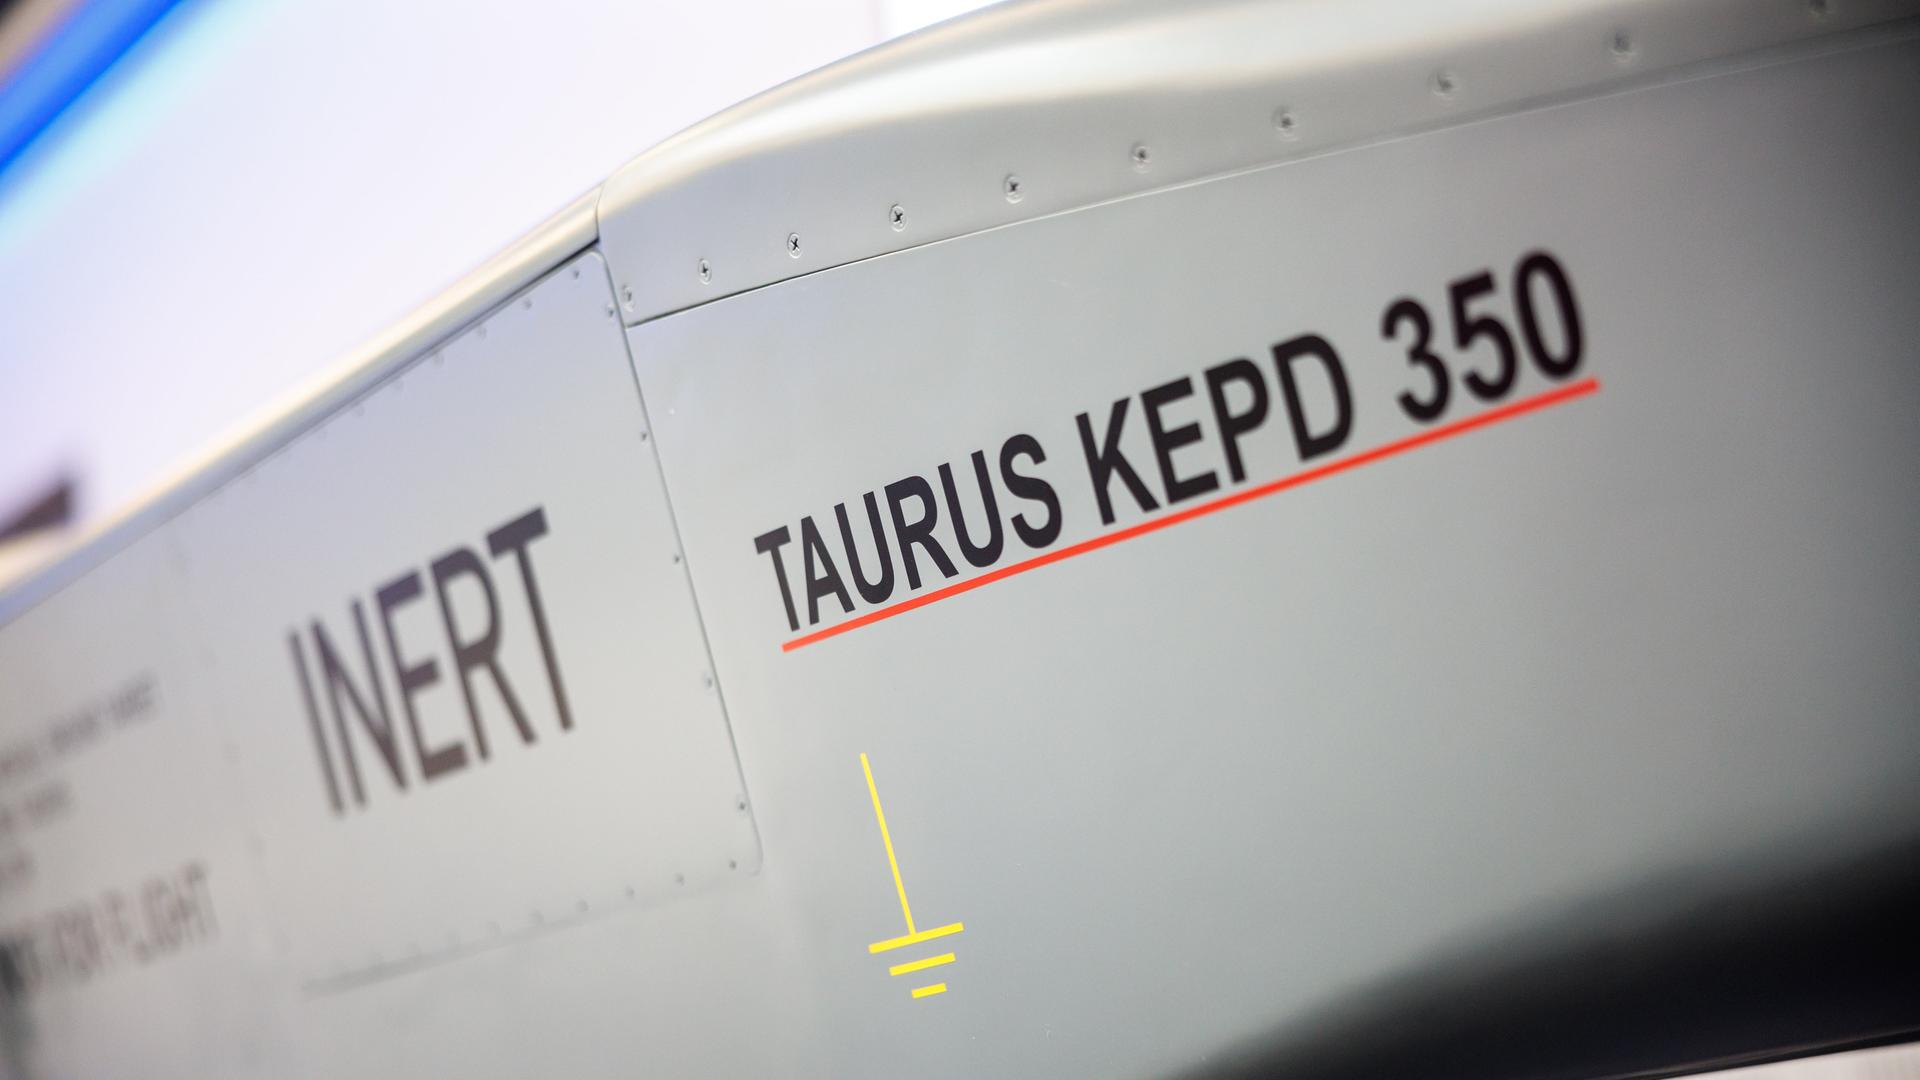 Der deutsch-schwedische Luft-Boden-Marschflugkörper Taurus wird in einem Showroom beim europäischen Rüstungsunternehmen MBDA (Matra BAe Dynamics Aerospatiale) präsentiert. Es ist ein grauer Gegenstand mit Metallhülle, auf dem TAURUS steht.